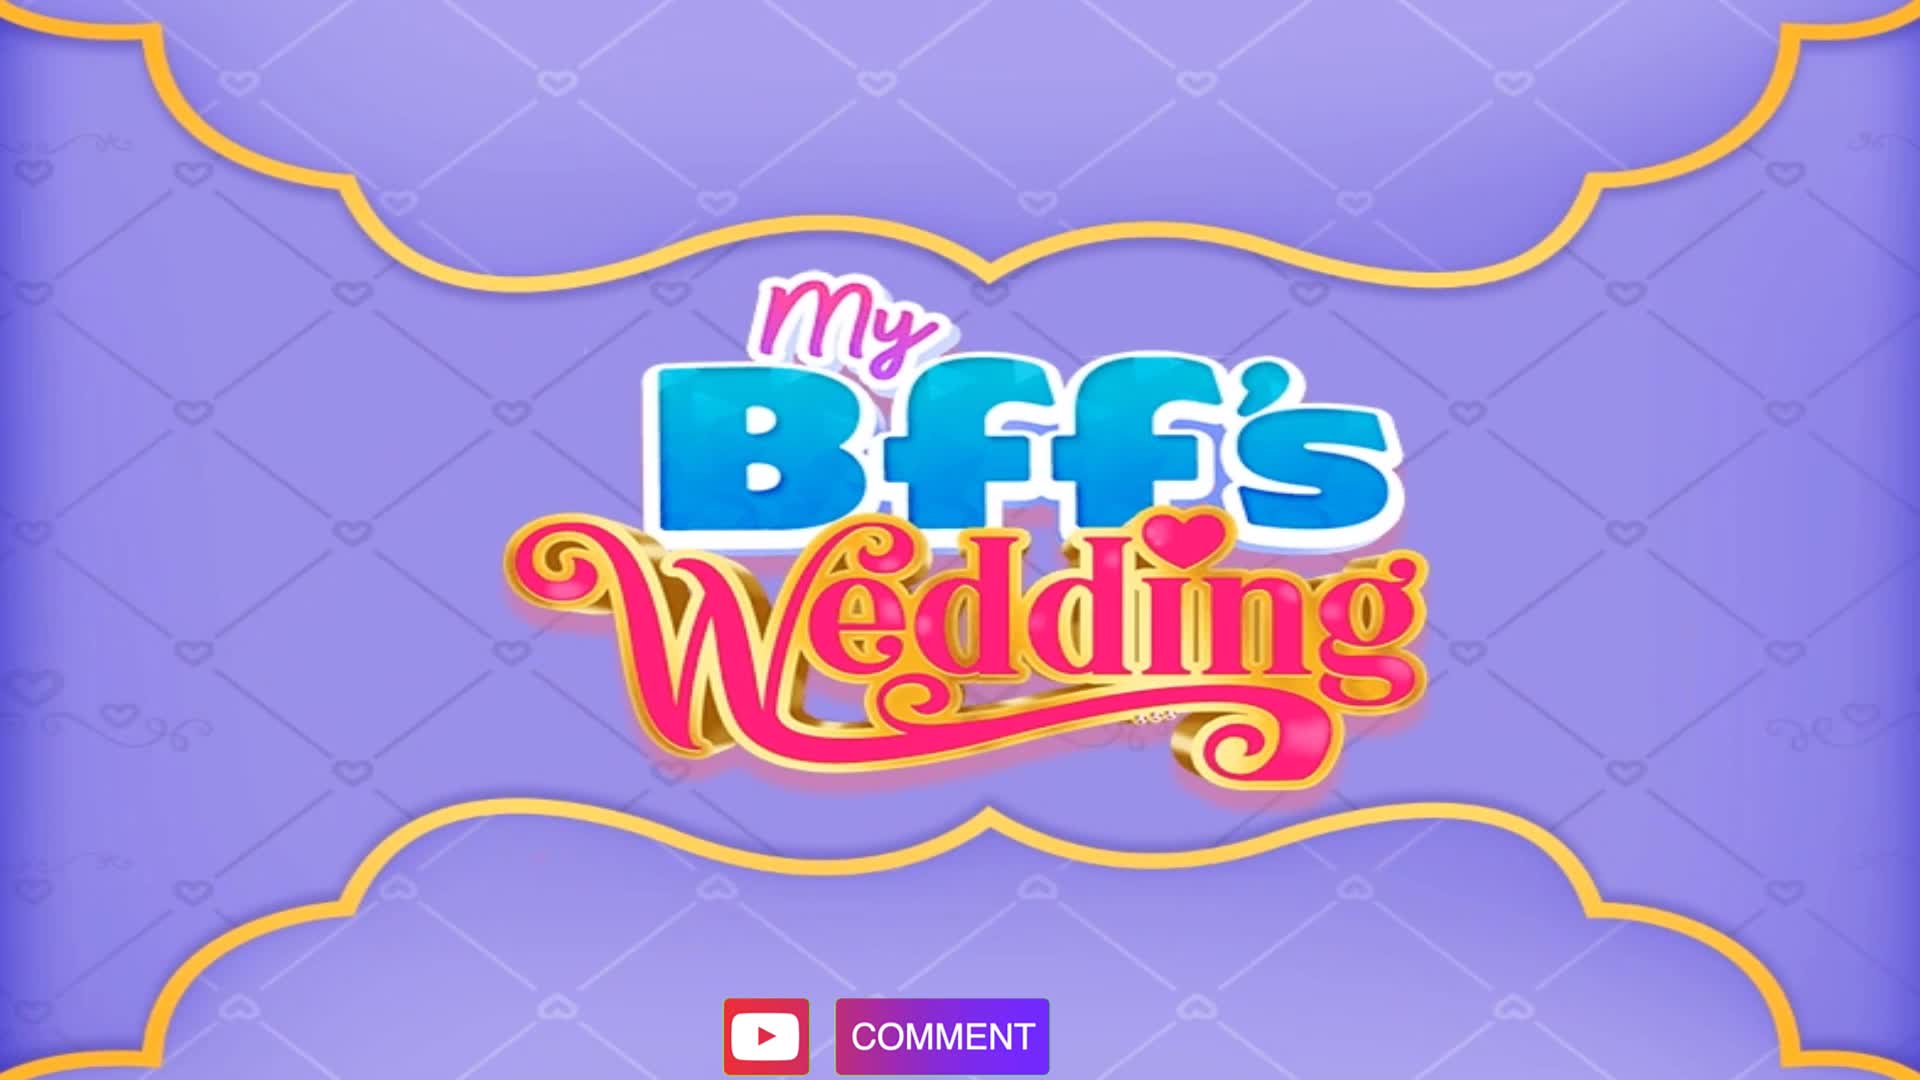 My BFF's Wedding Walkthrough